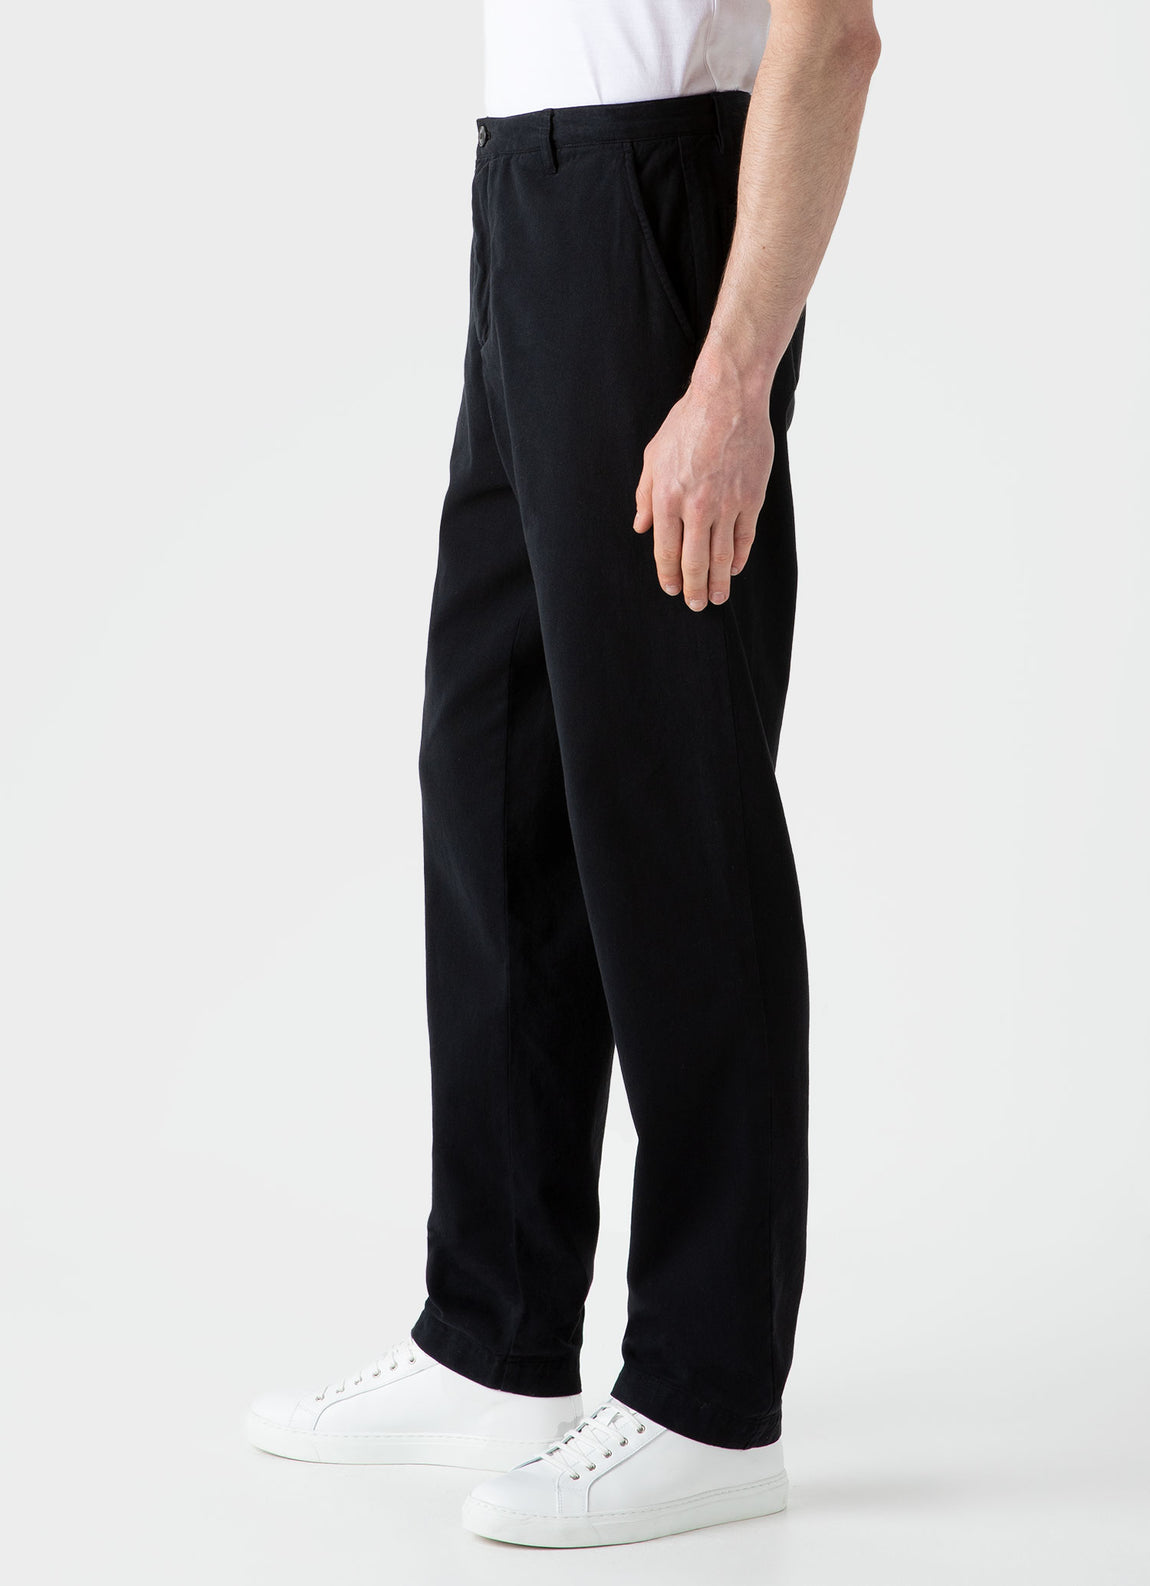 Men's Brushed Cotton Chore Trouser in Black | Sunspel